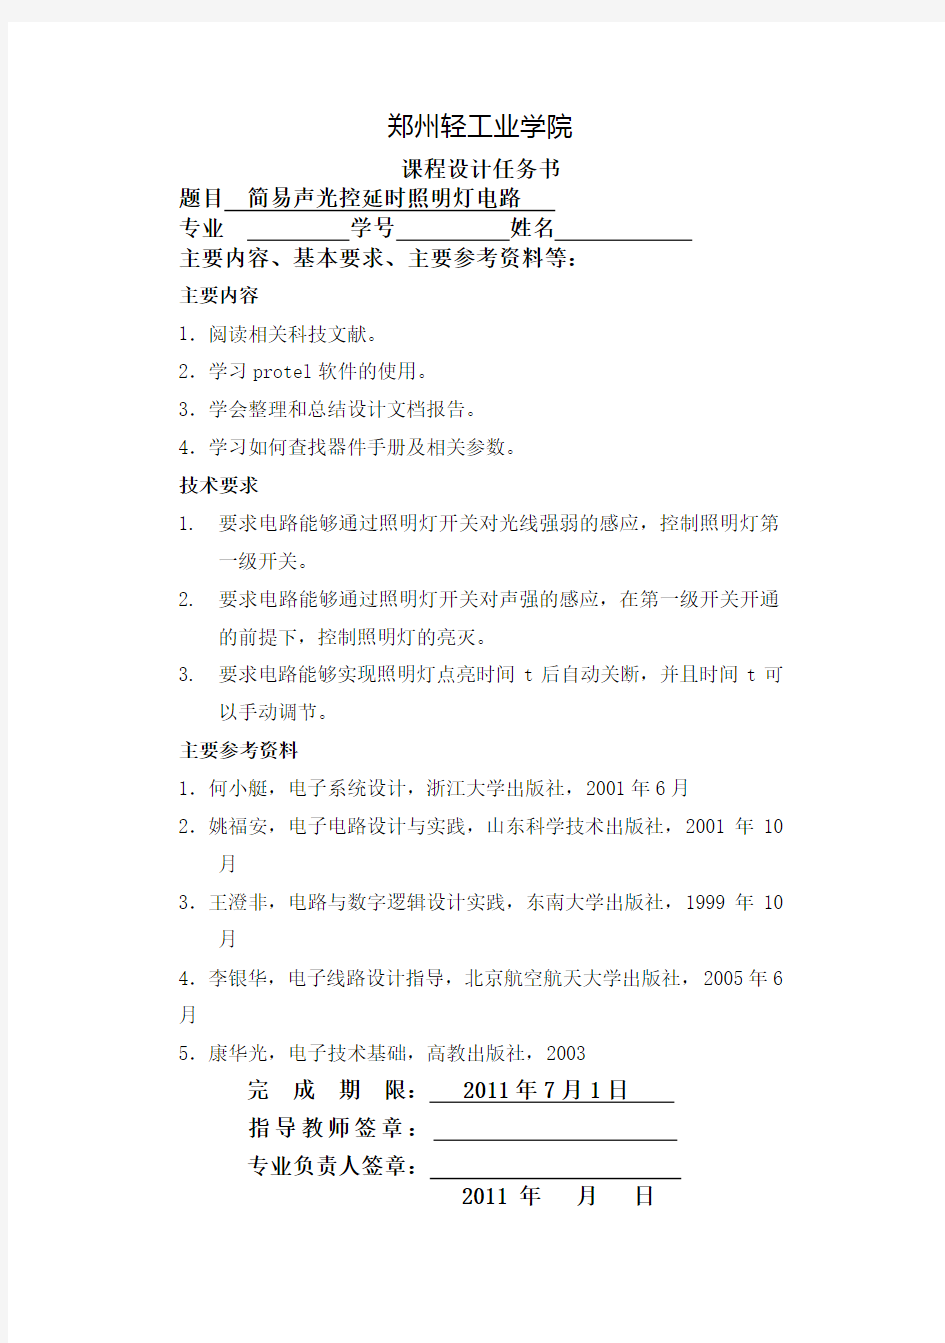 郑州轻工业学院电子信息工程课程设计任务书